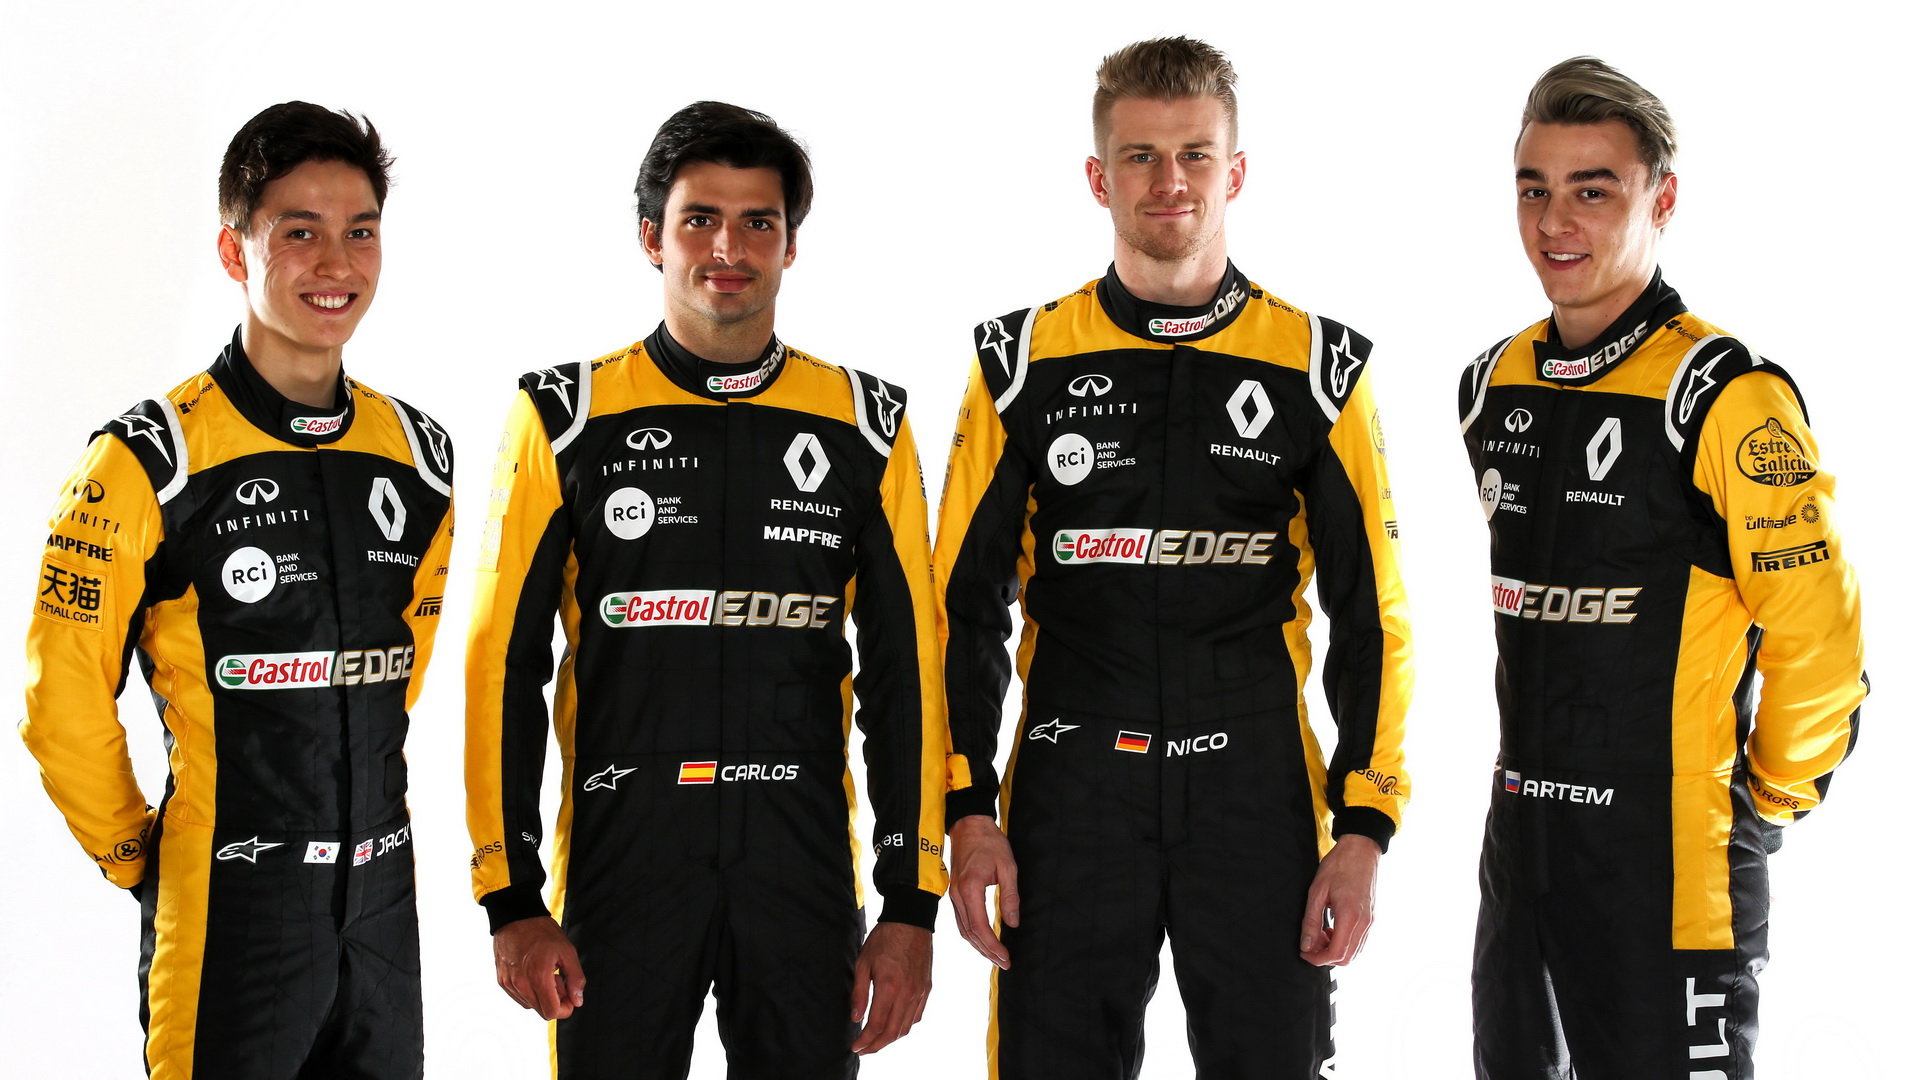 Jezdci týmu Renault pro sezónu 2018